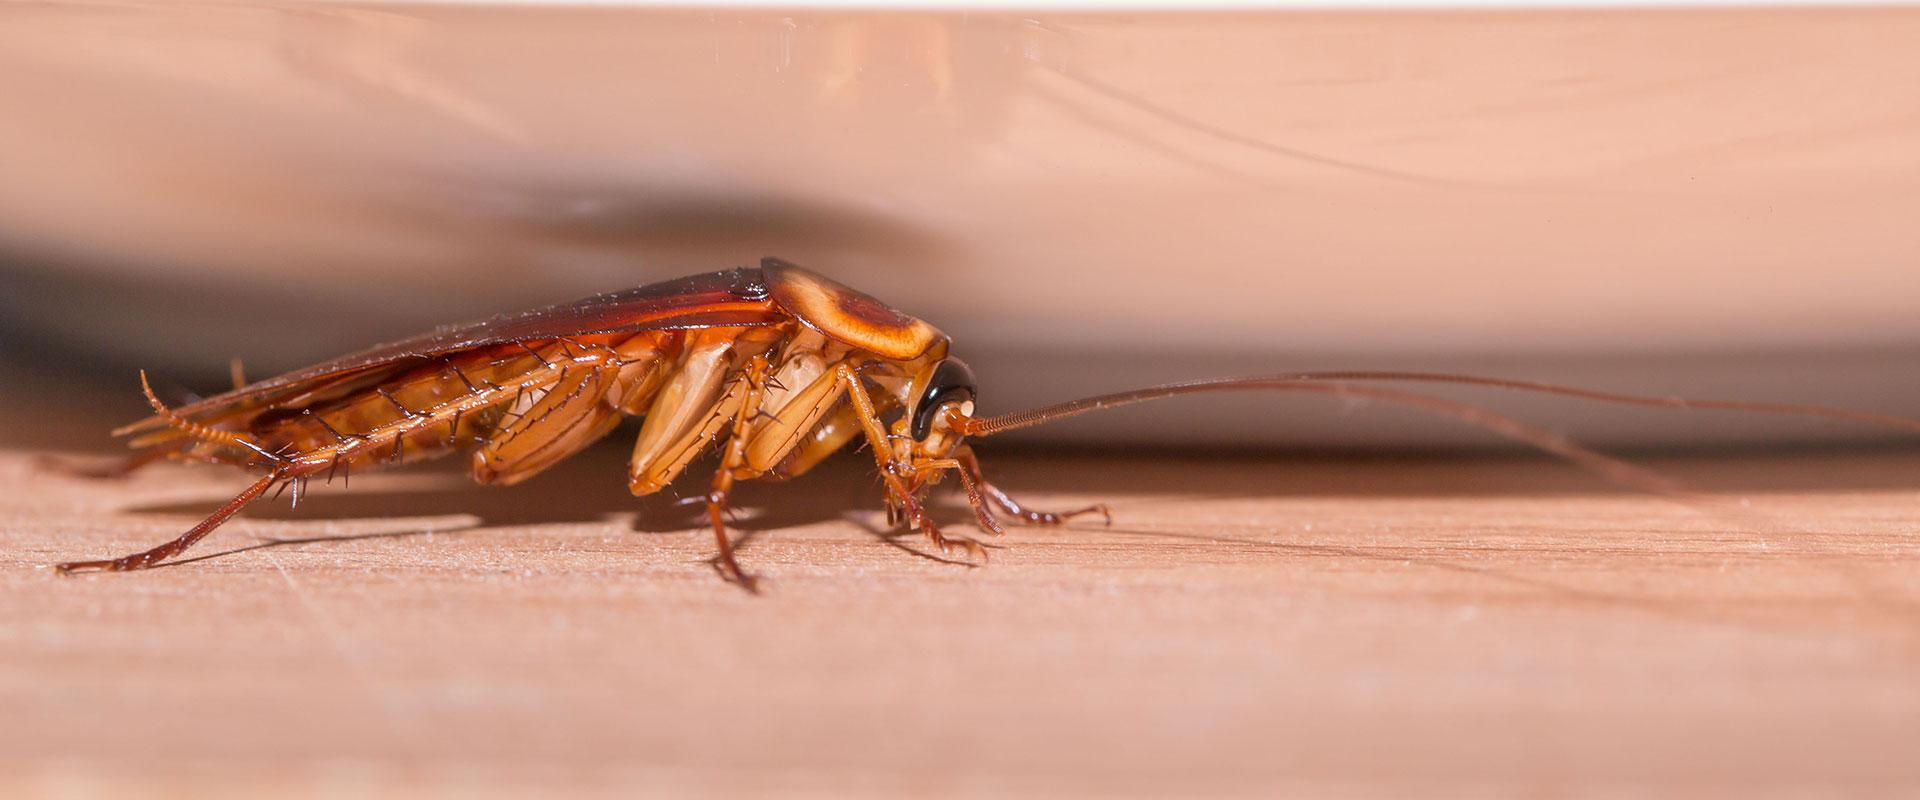 a cockroach on a table